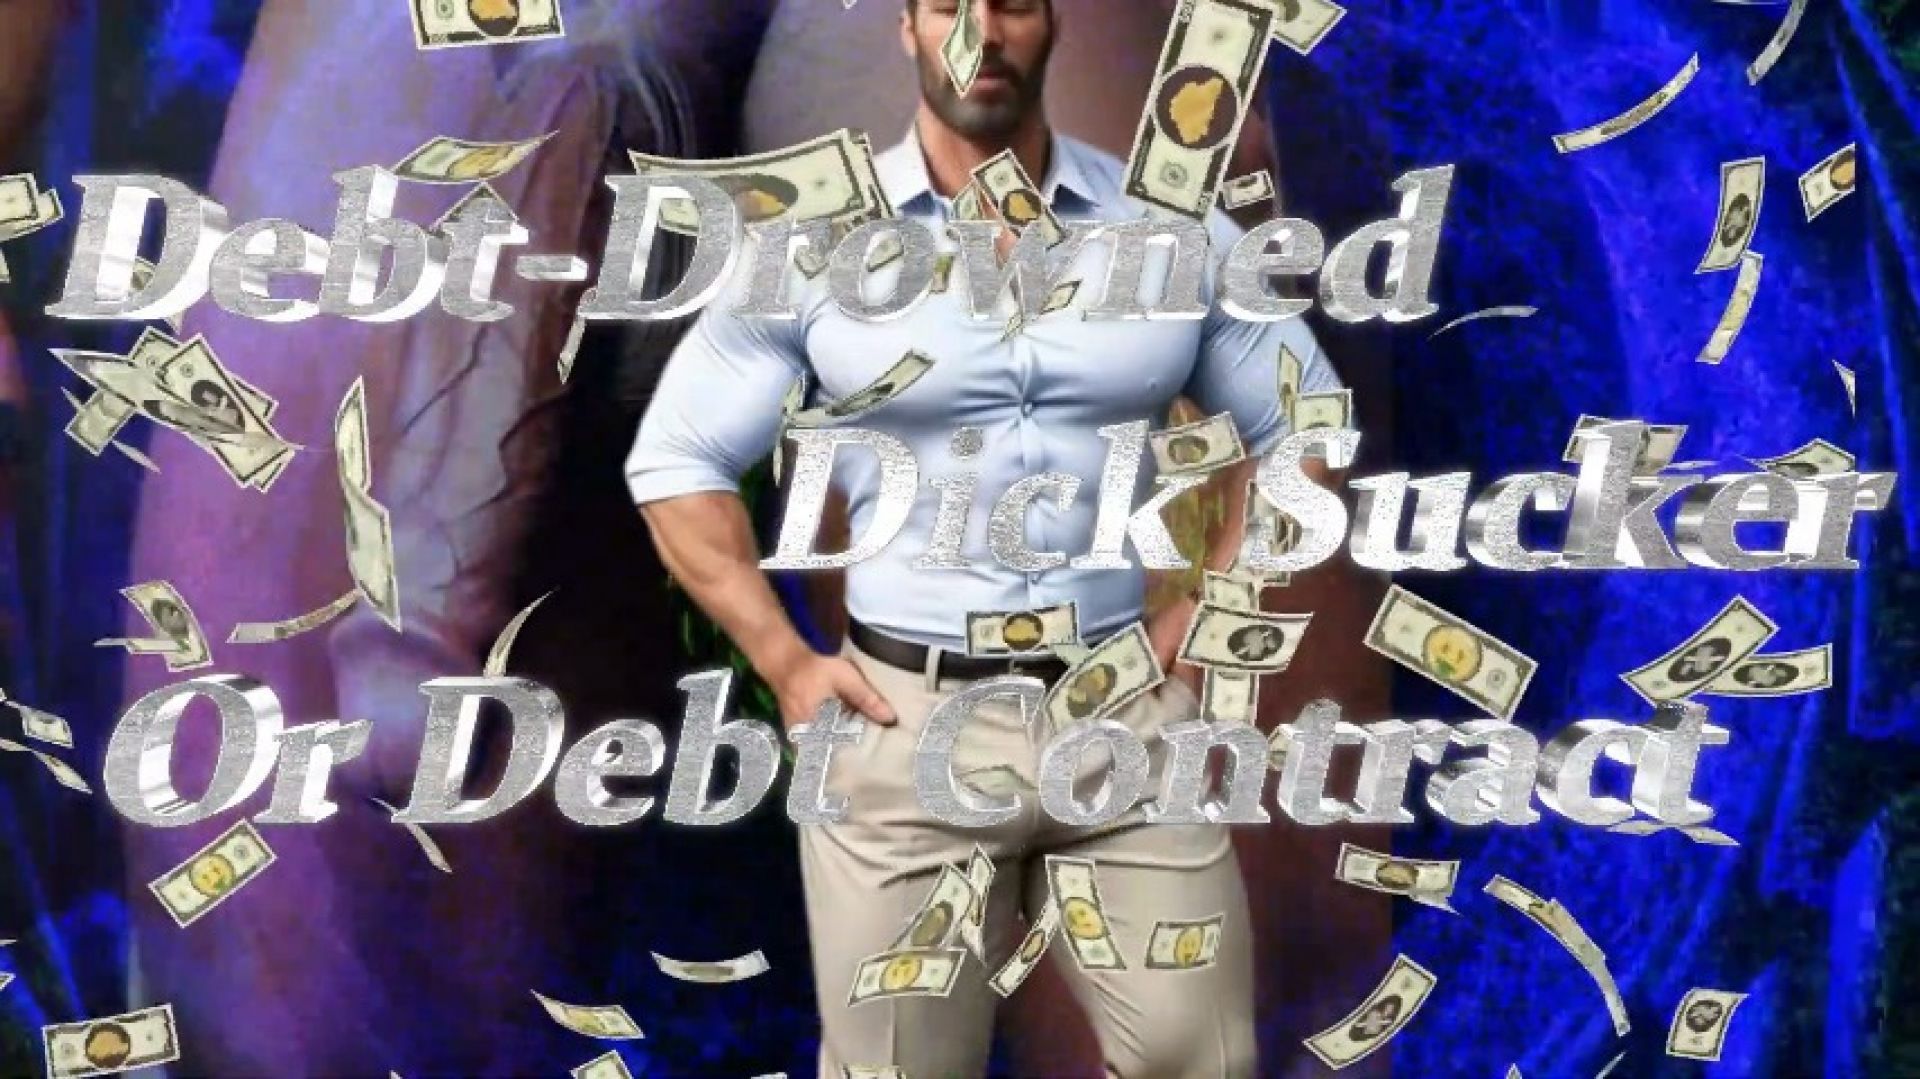 Debt-Drowned Dick Sucker Or Debt Contract